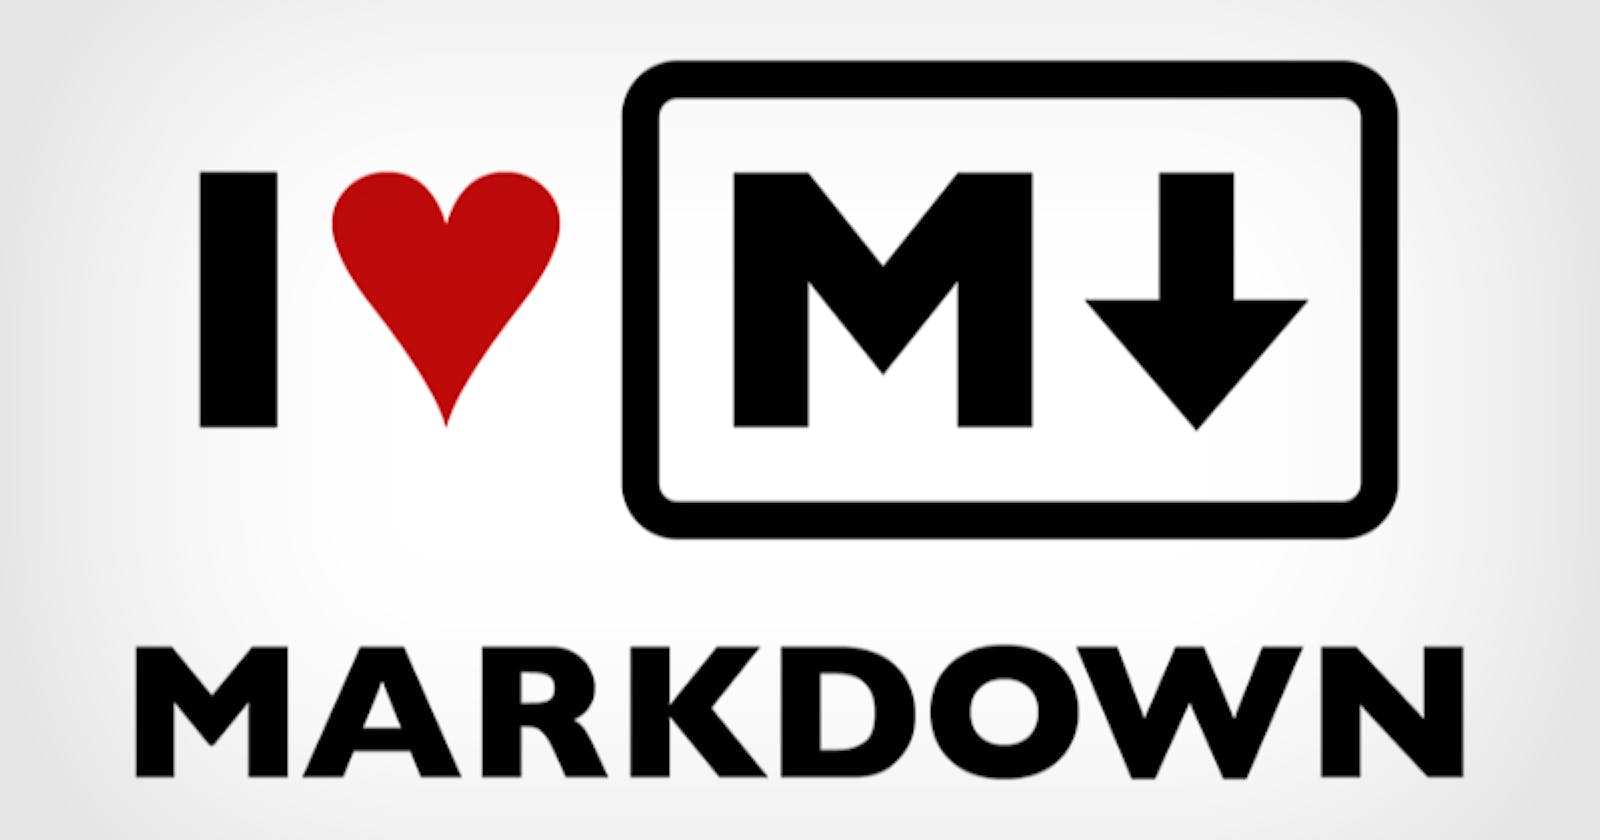 Markdown Magic